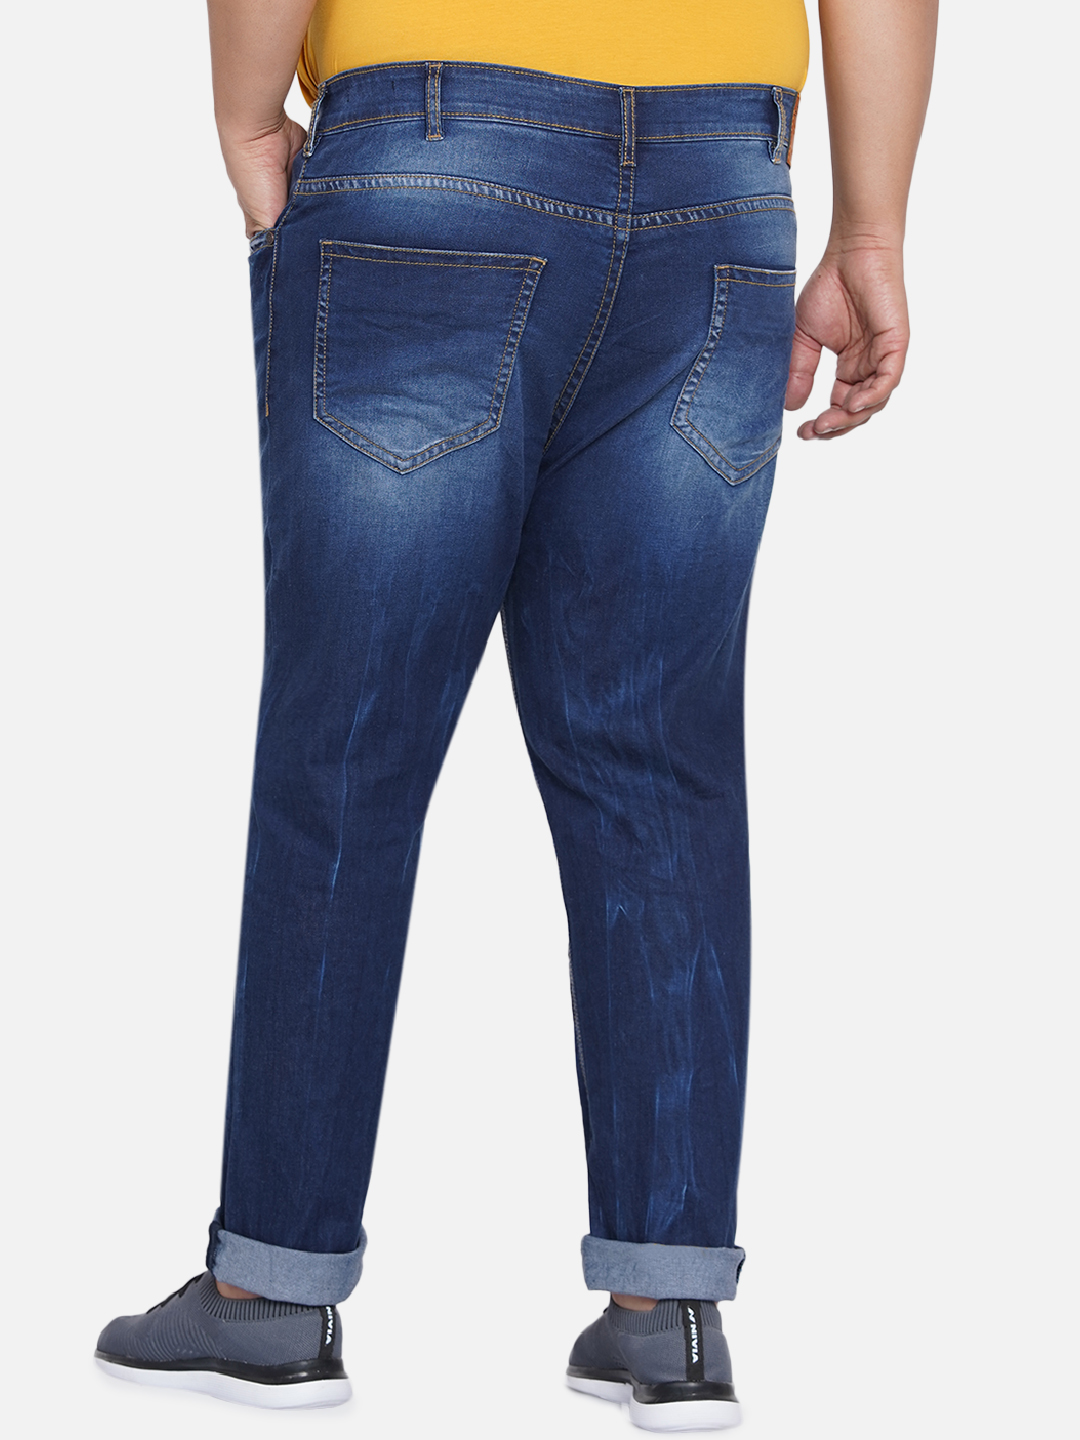 bottomwear/jeans/JPJ12202/jpj12202-5.jpg